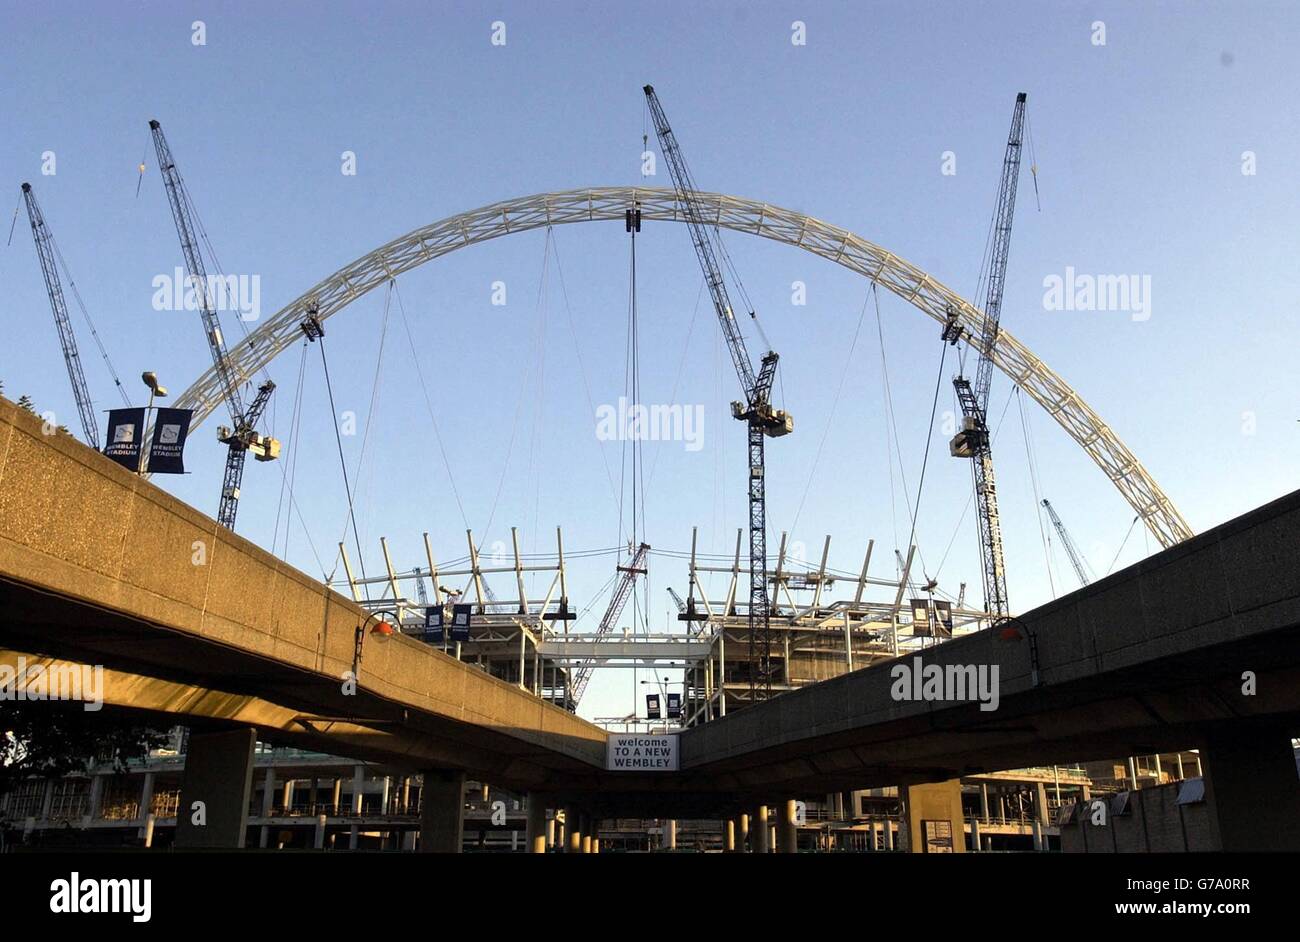 Une vue générale de l'arche ombratée par des grues de construction, au nouveau complexe Wembley Stadium dans le nord-ouest de Londres. Le projet qui est actuellement en proie à des problèmes après des litiges contractuels, doit accueillir une "cérémonie de tête" ce soir. Banque D'Images